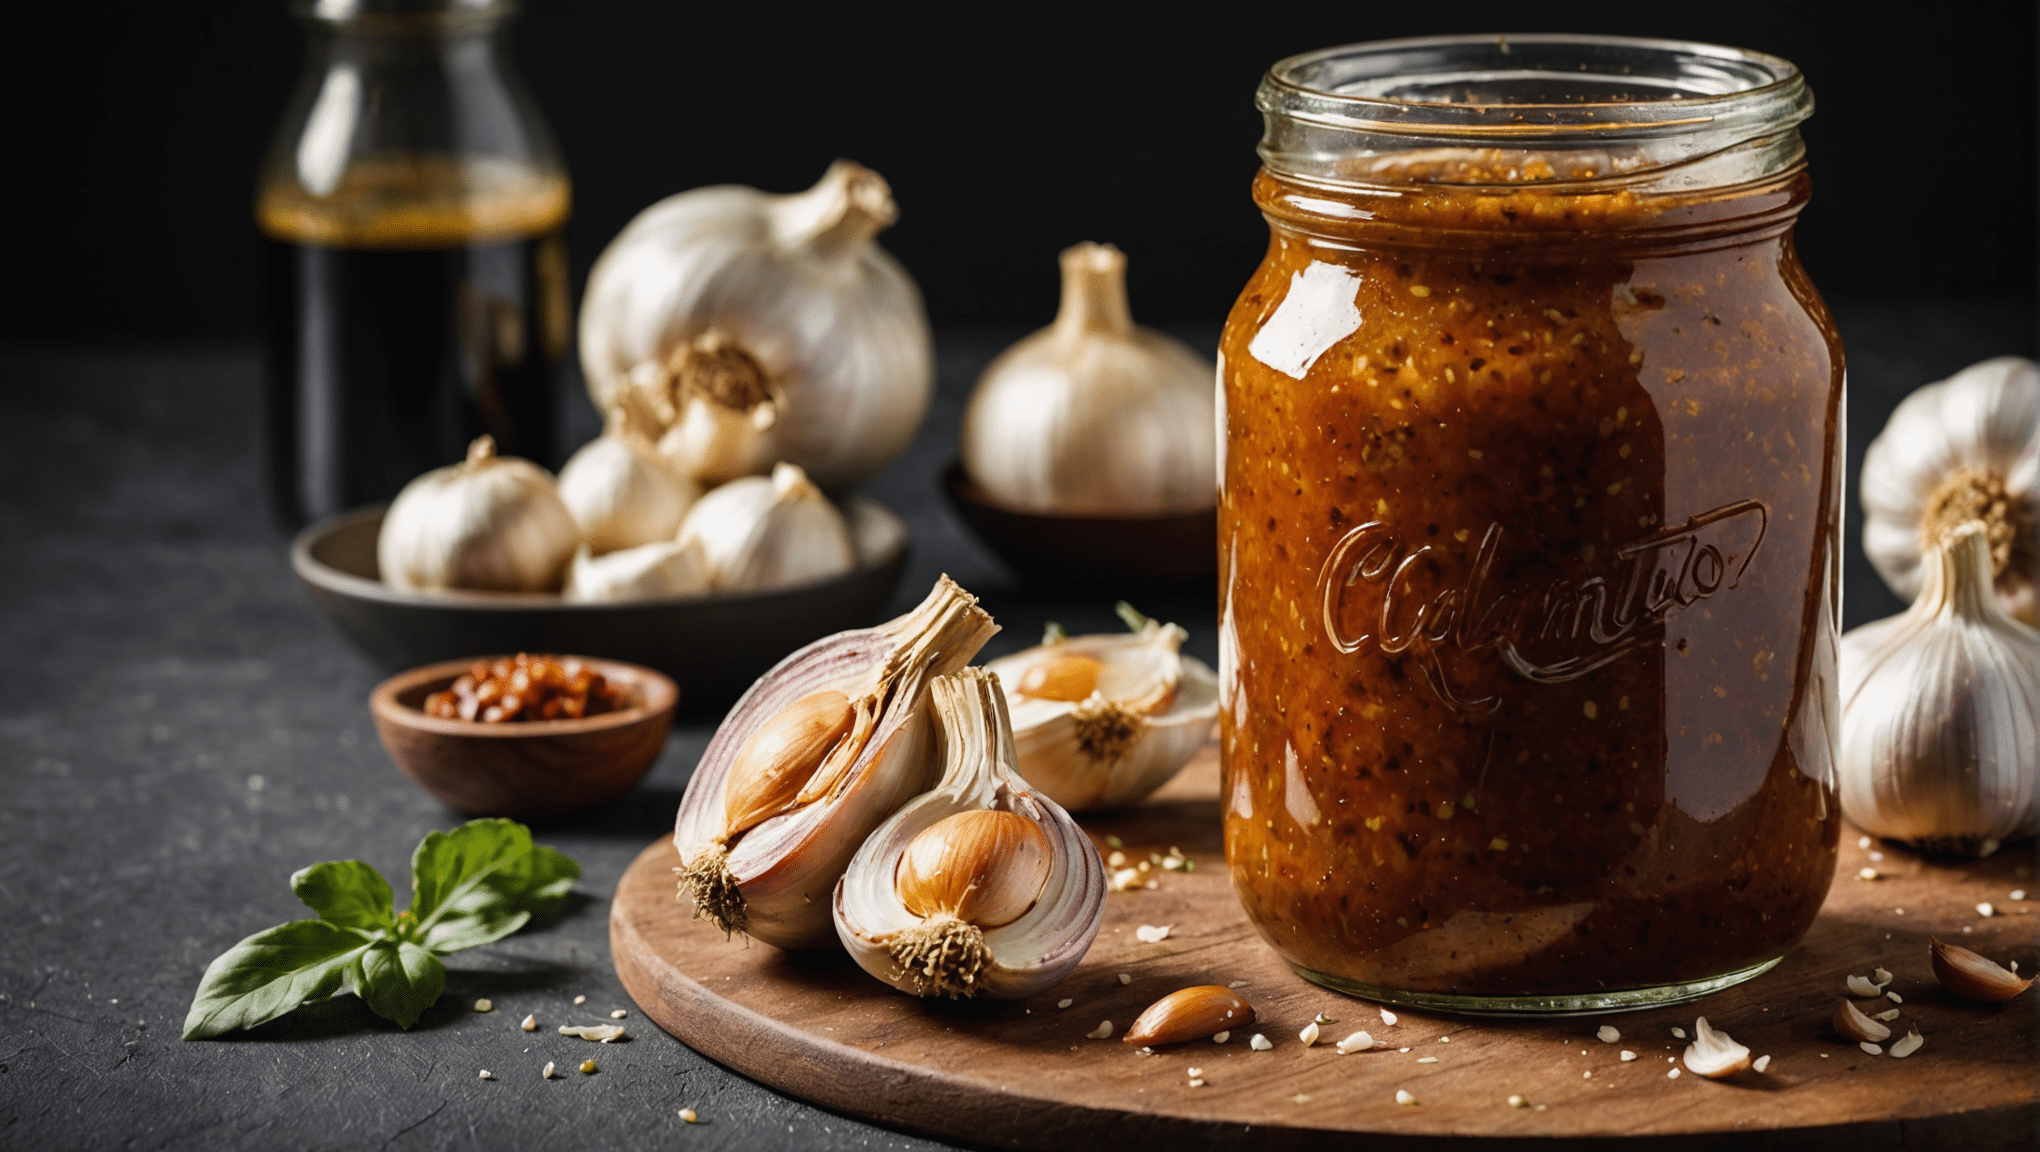 Culantro Garlic Marinade for Meats Recipe Image